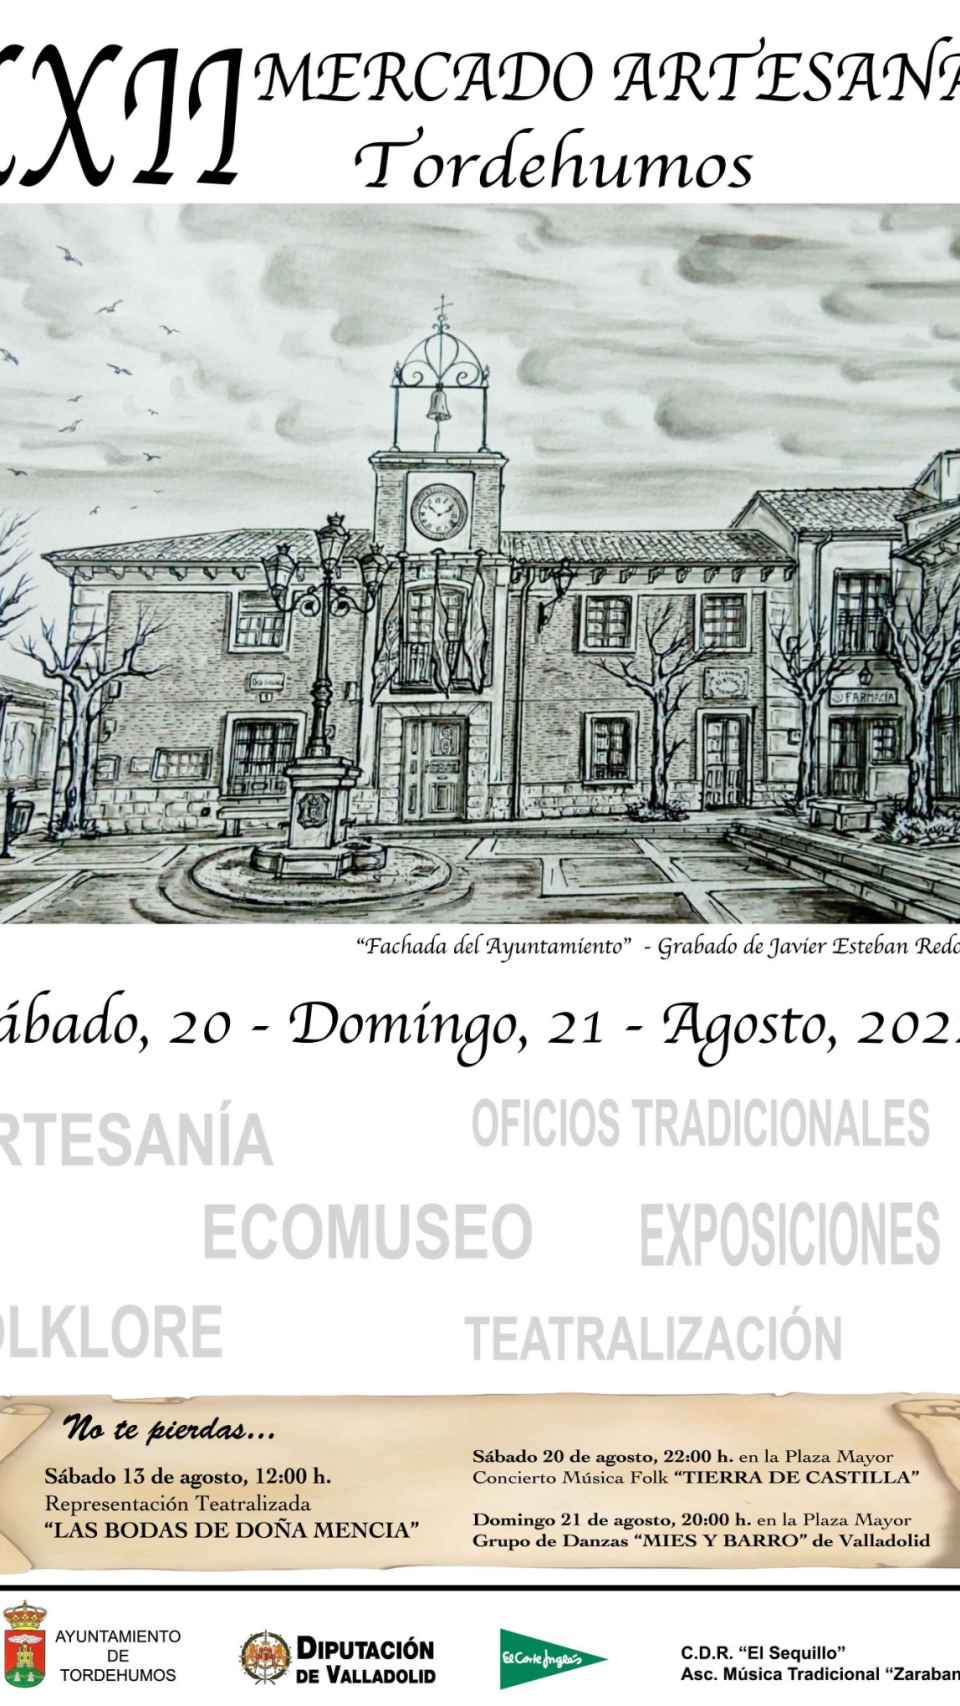 Cartel del Mercado Artesanal de Tordehumos